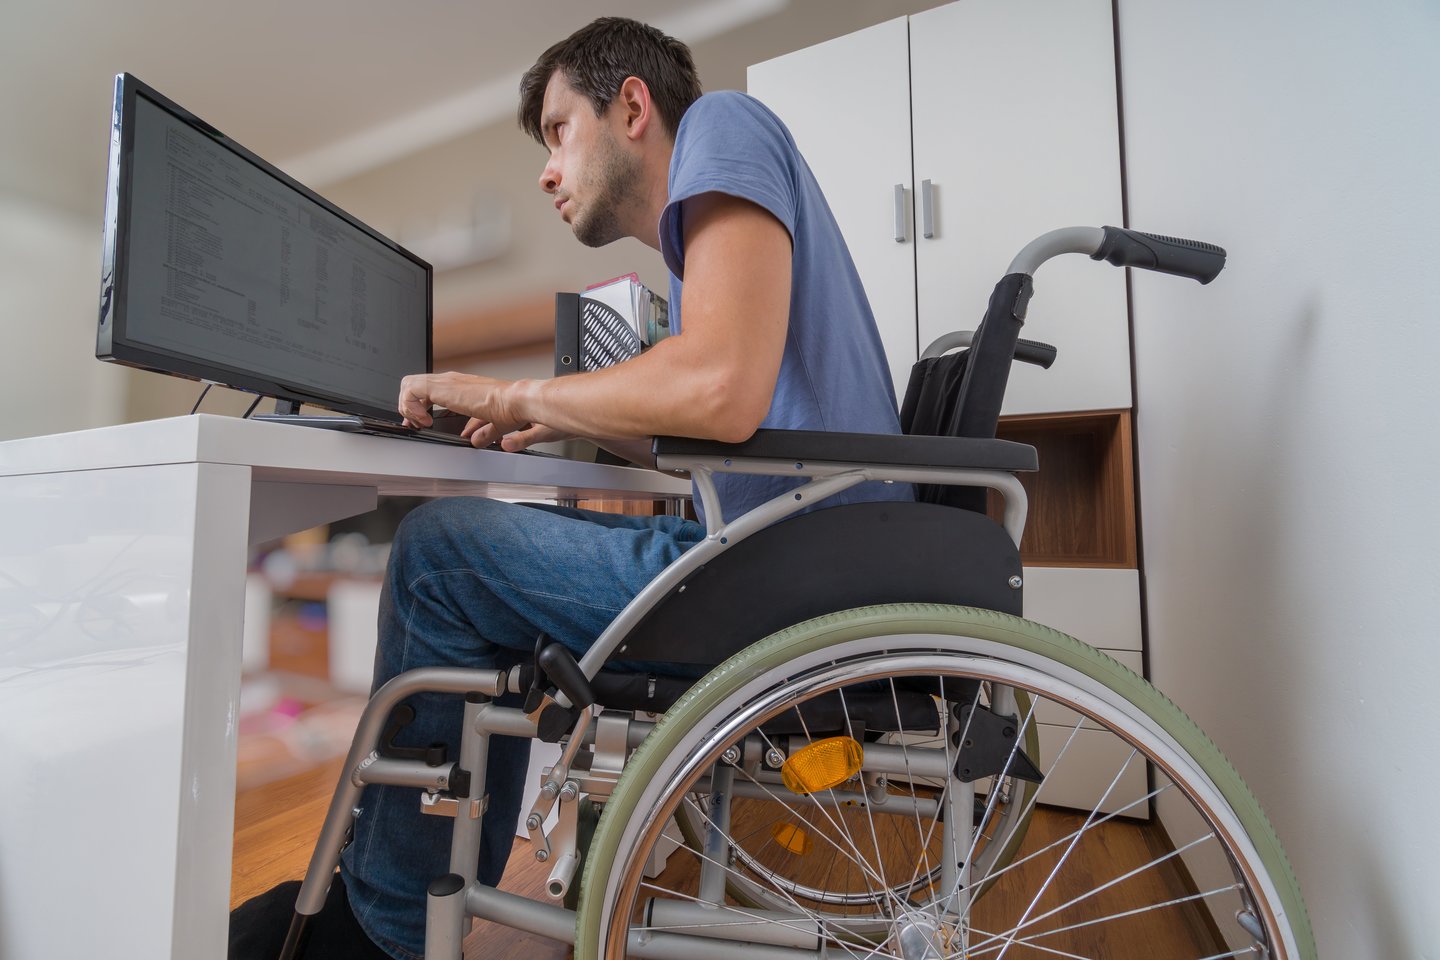  Neįgaliųjų norui įsidarbinti neretai sutrukdo ir biurokratinės kliūtys.<br> 123rf nuotr. 